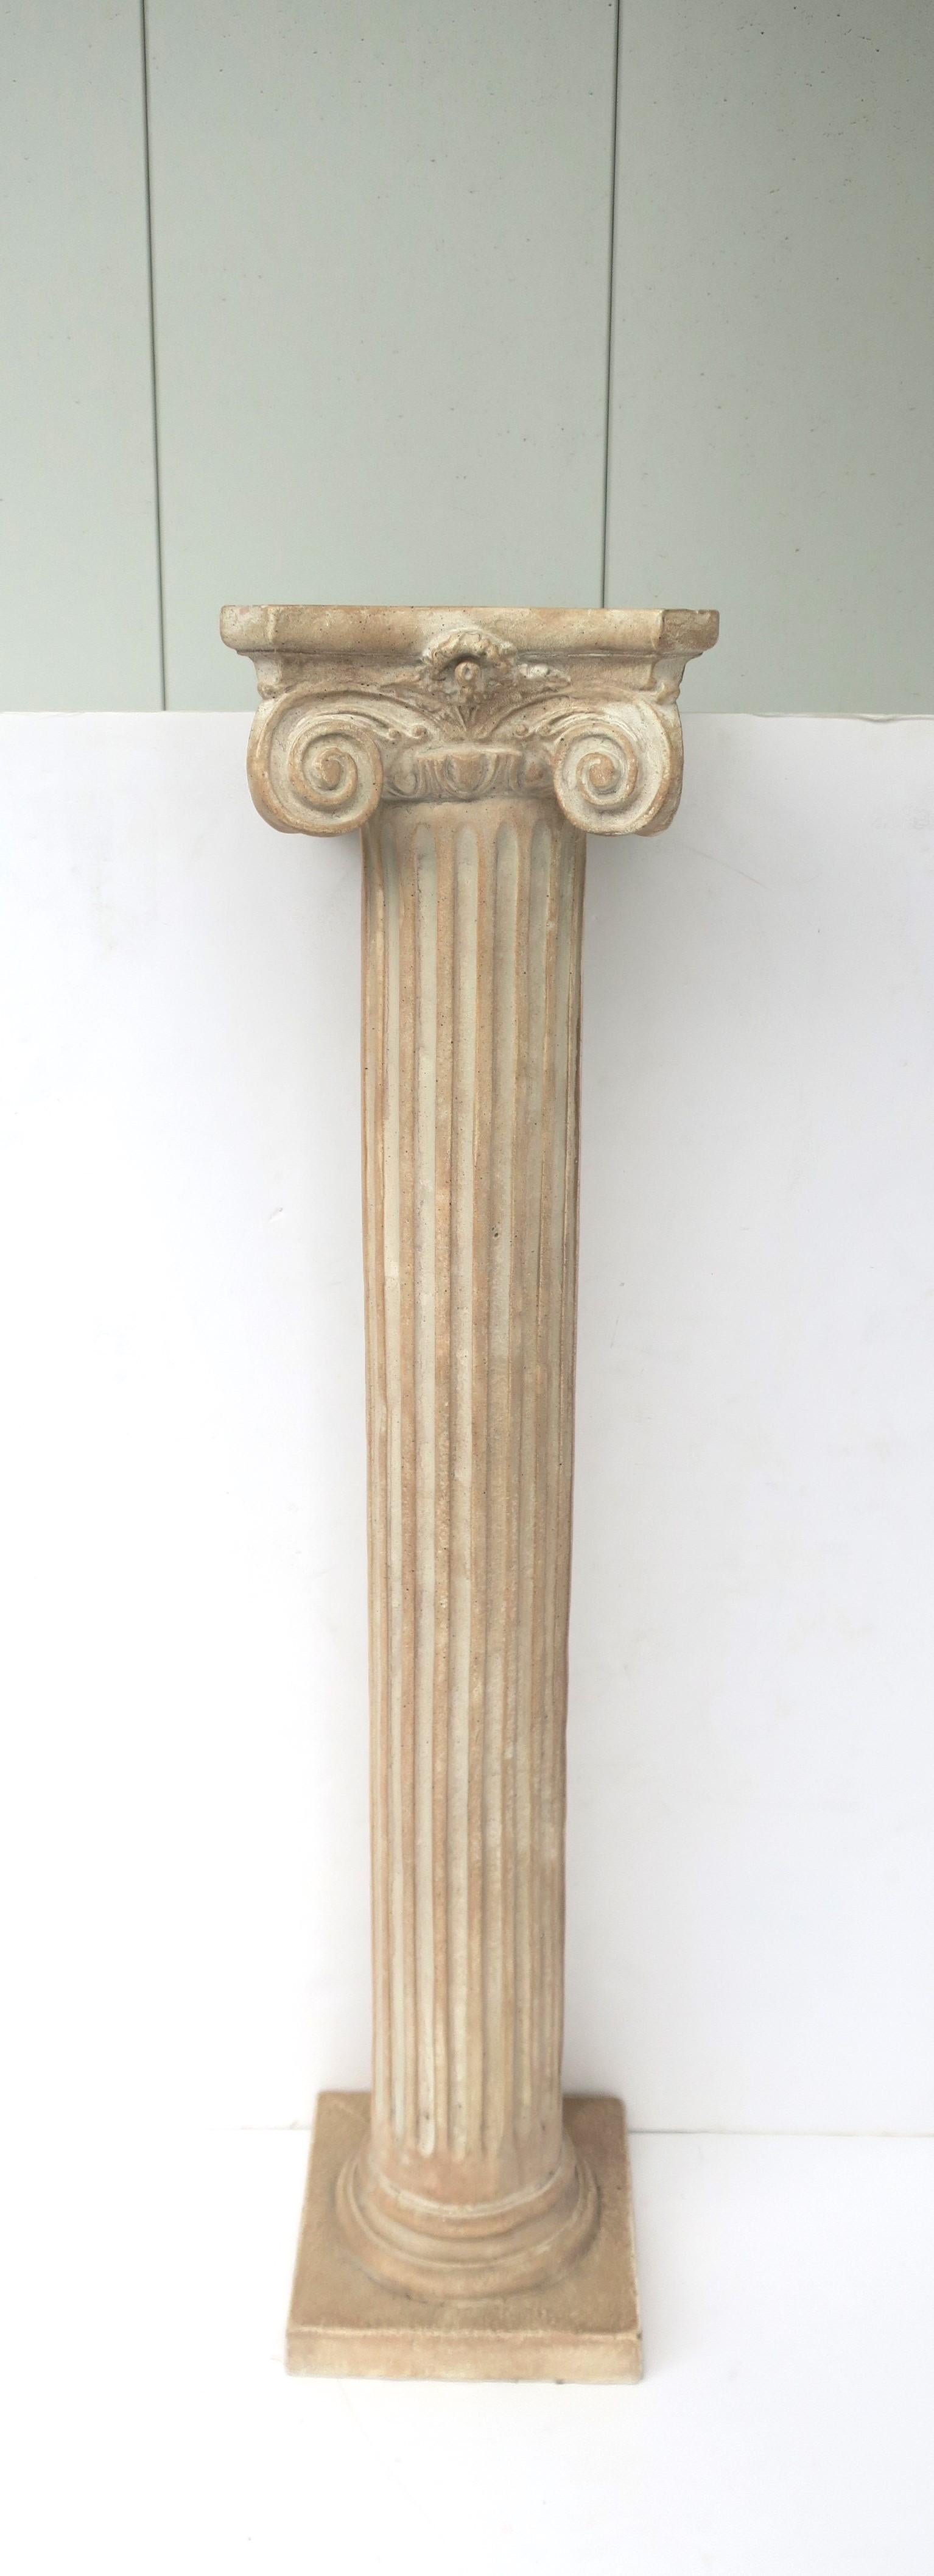 Pedestal de columna jónica con pilar estriado y base cuadrada de estilo neoclásico grecorromano, hacia finales del siglo XX, 1982. La columna tiene un peso agradable; está diseñada con un material compuesto que se asemeja a la piedra. Estupendo como